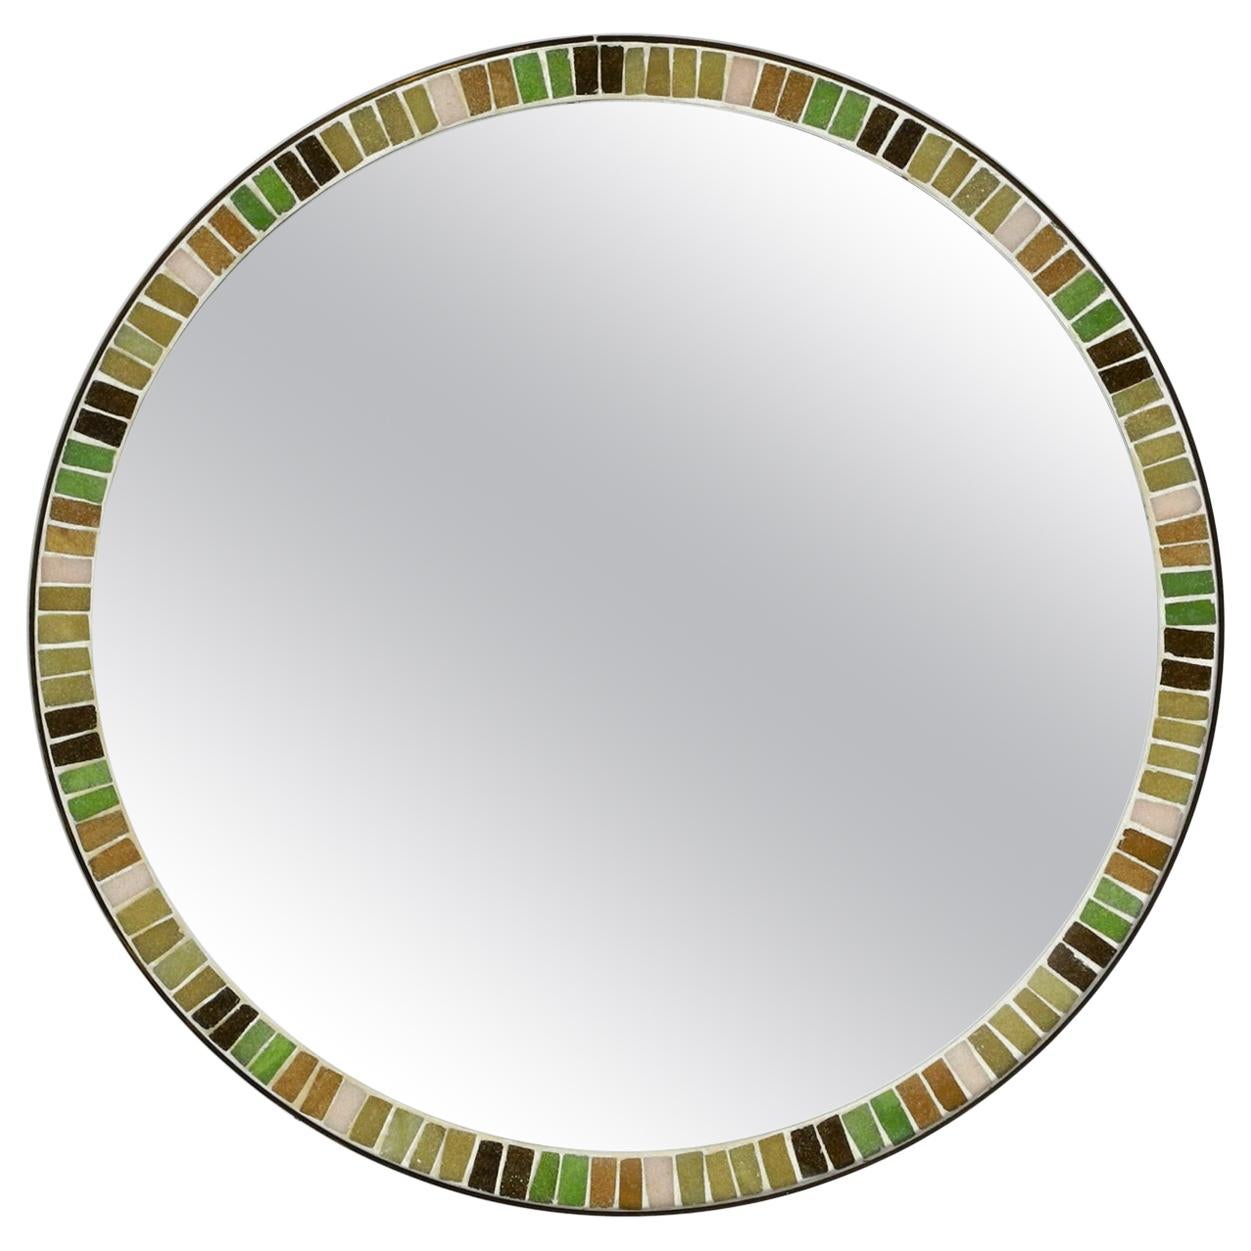 Beautiful Round Midcentury Mosaic Wall Mirror from Münchner Zierspiegel Mirror